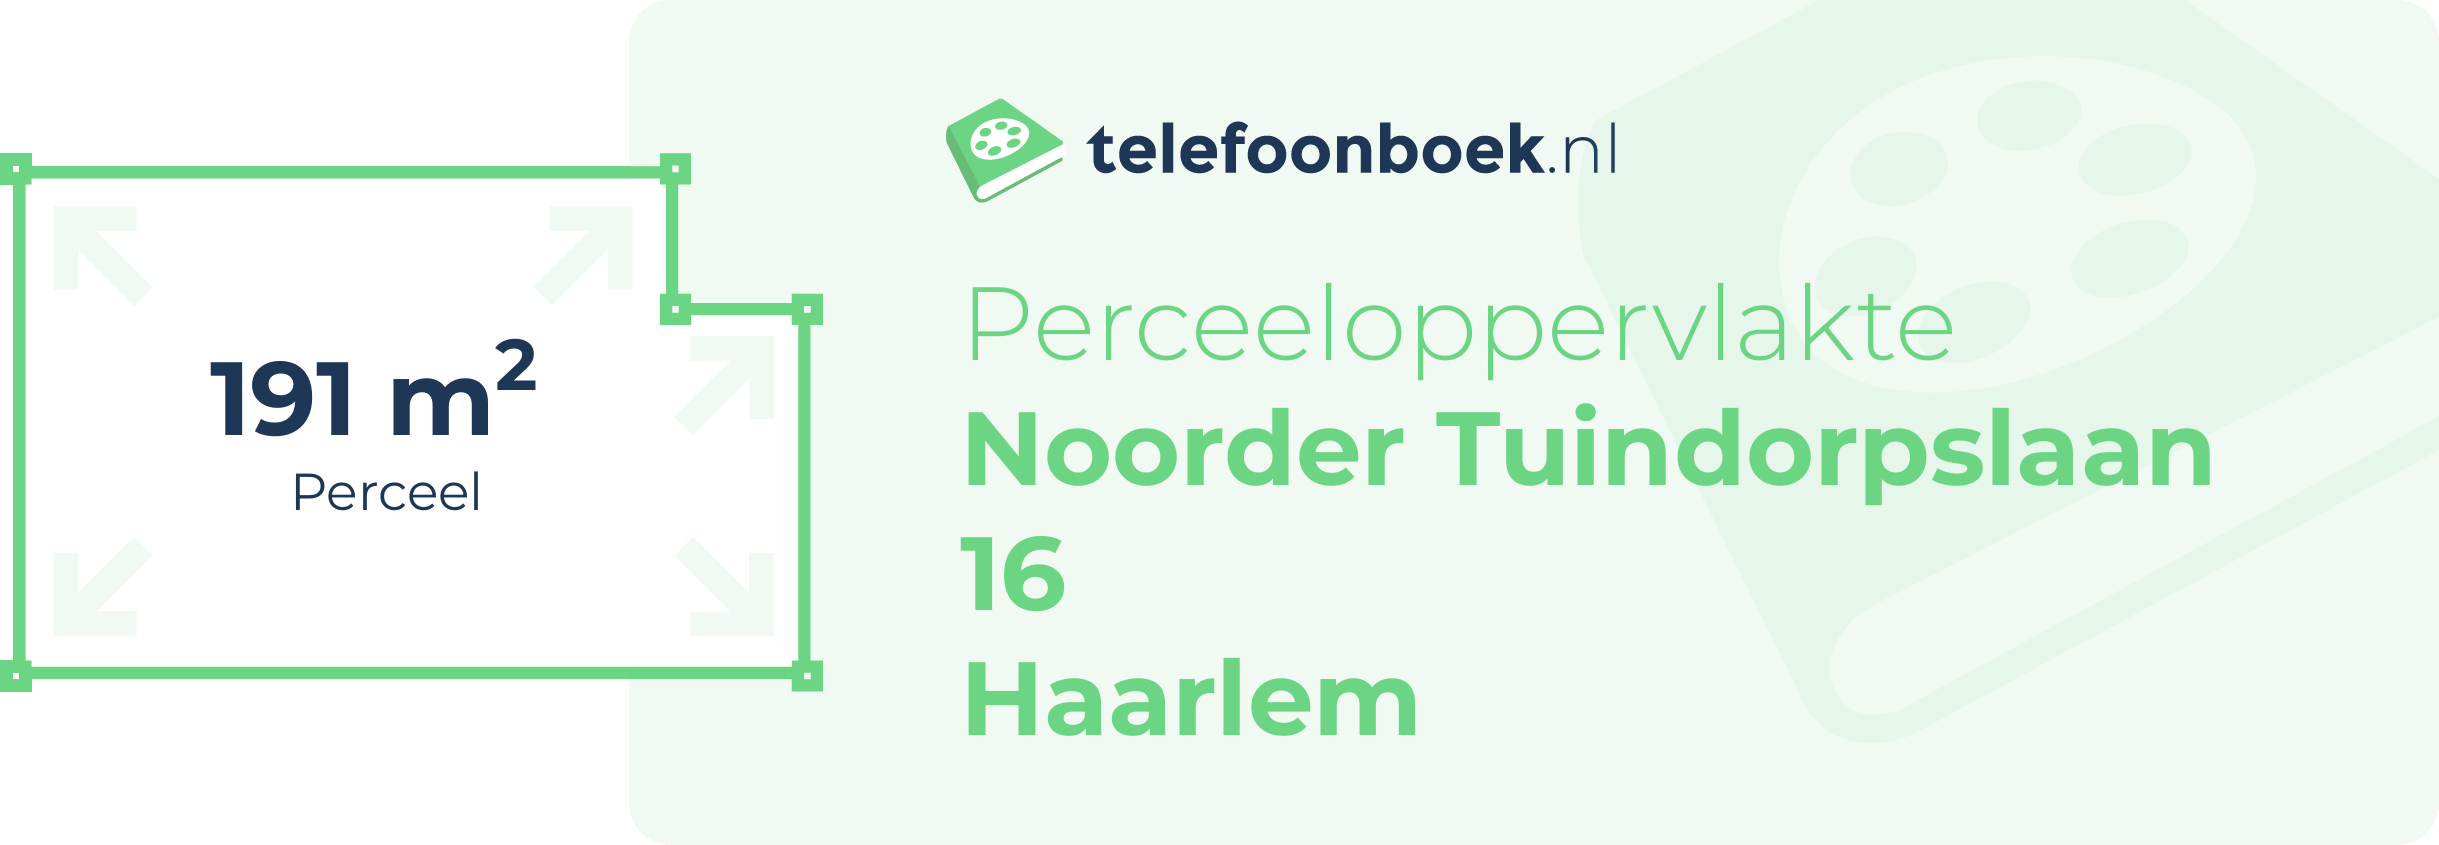 Perceeloppervlakte Noorder Tuindorpslaan 16 Haarlem